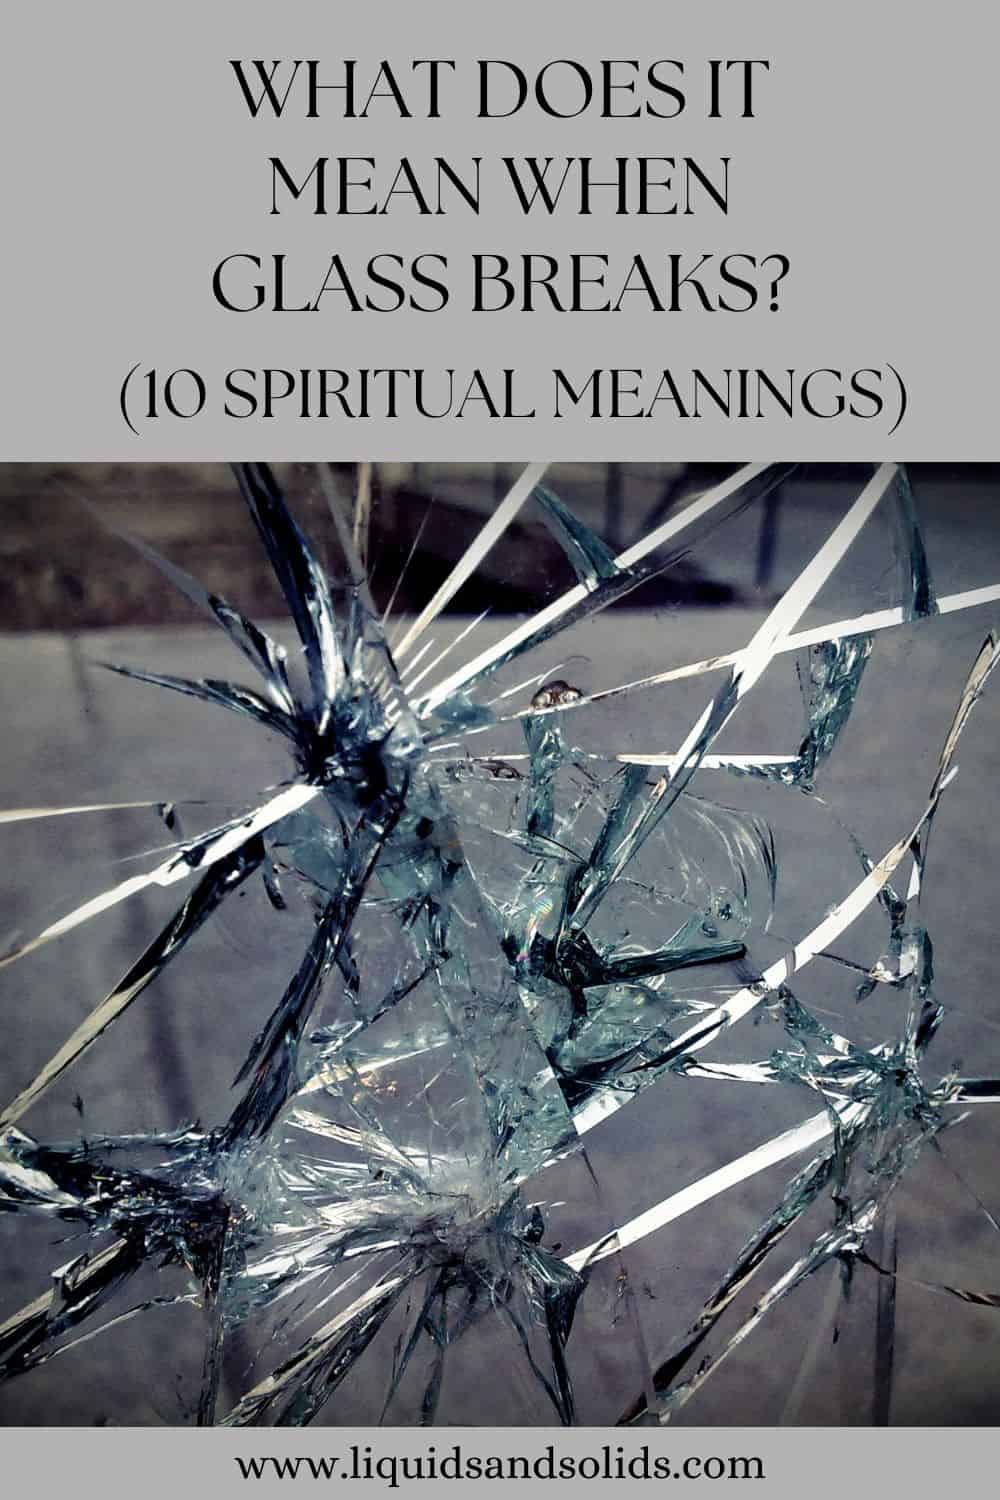  Hvad betyder det, når glas går i stykker? (10 åndelige betydninger)